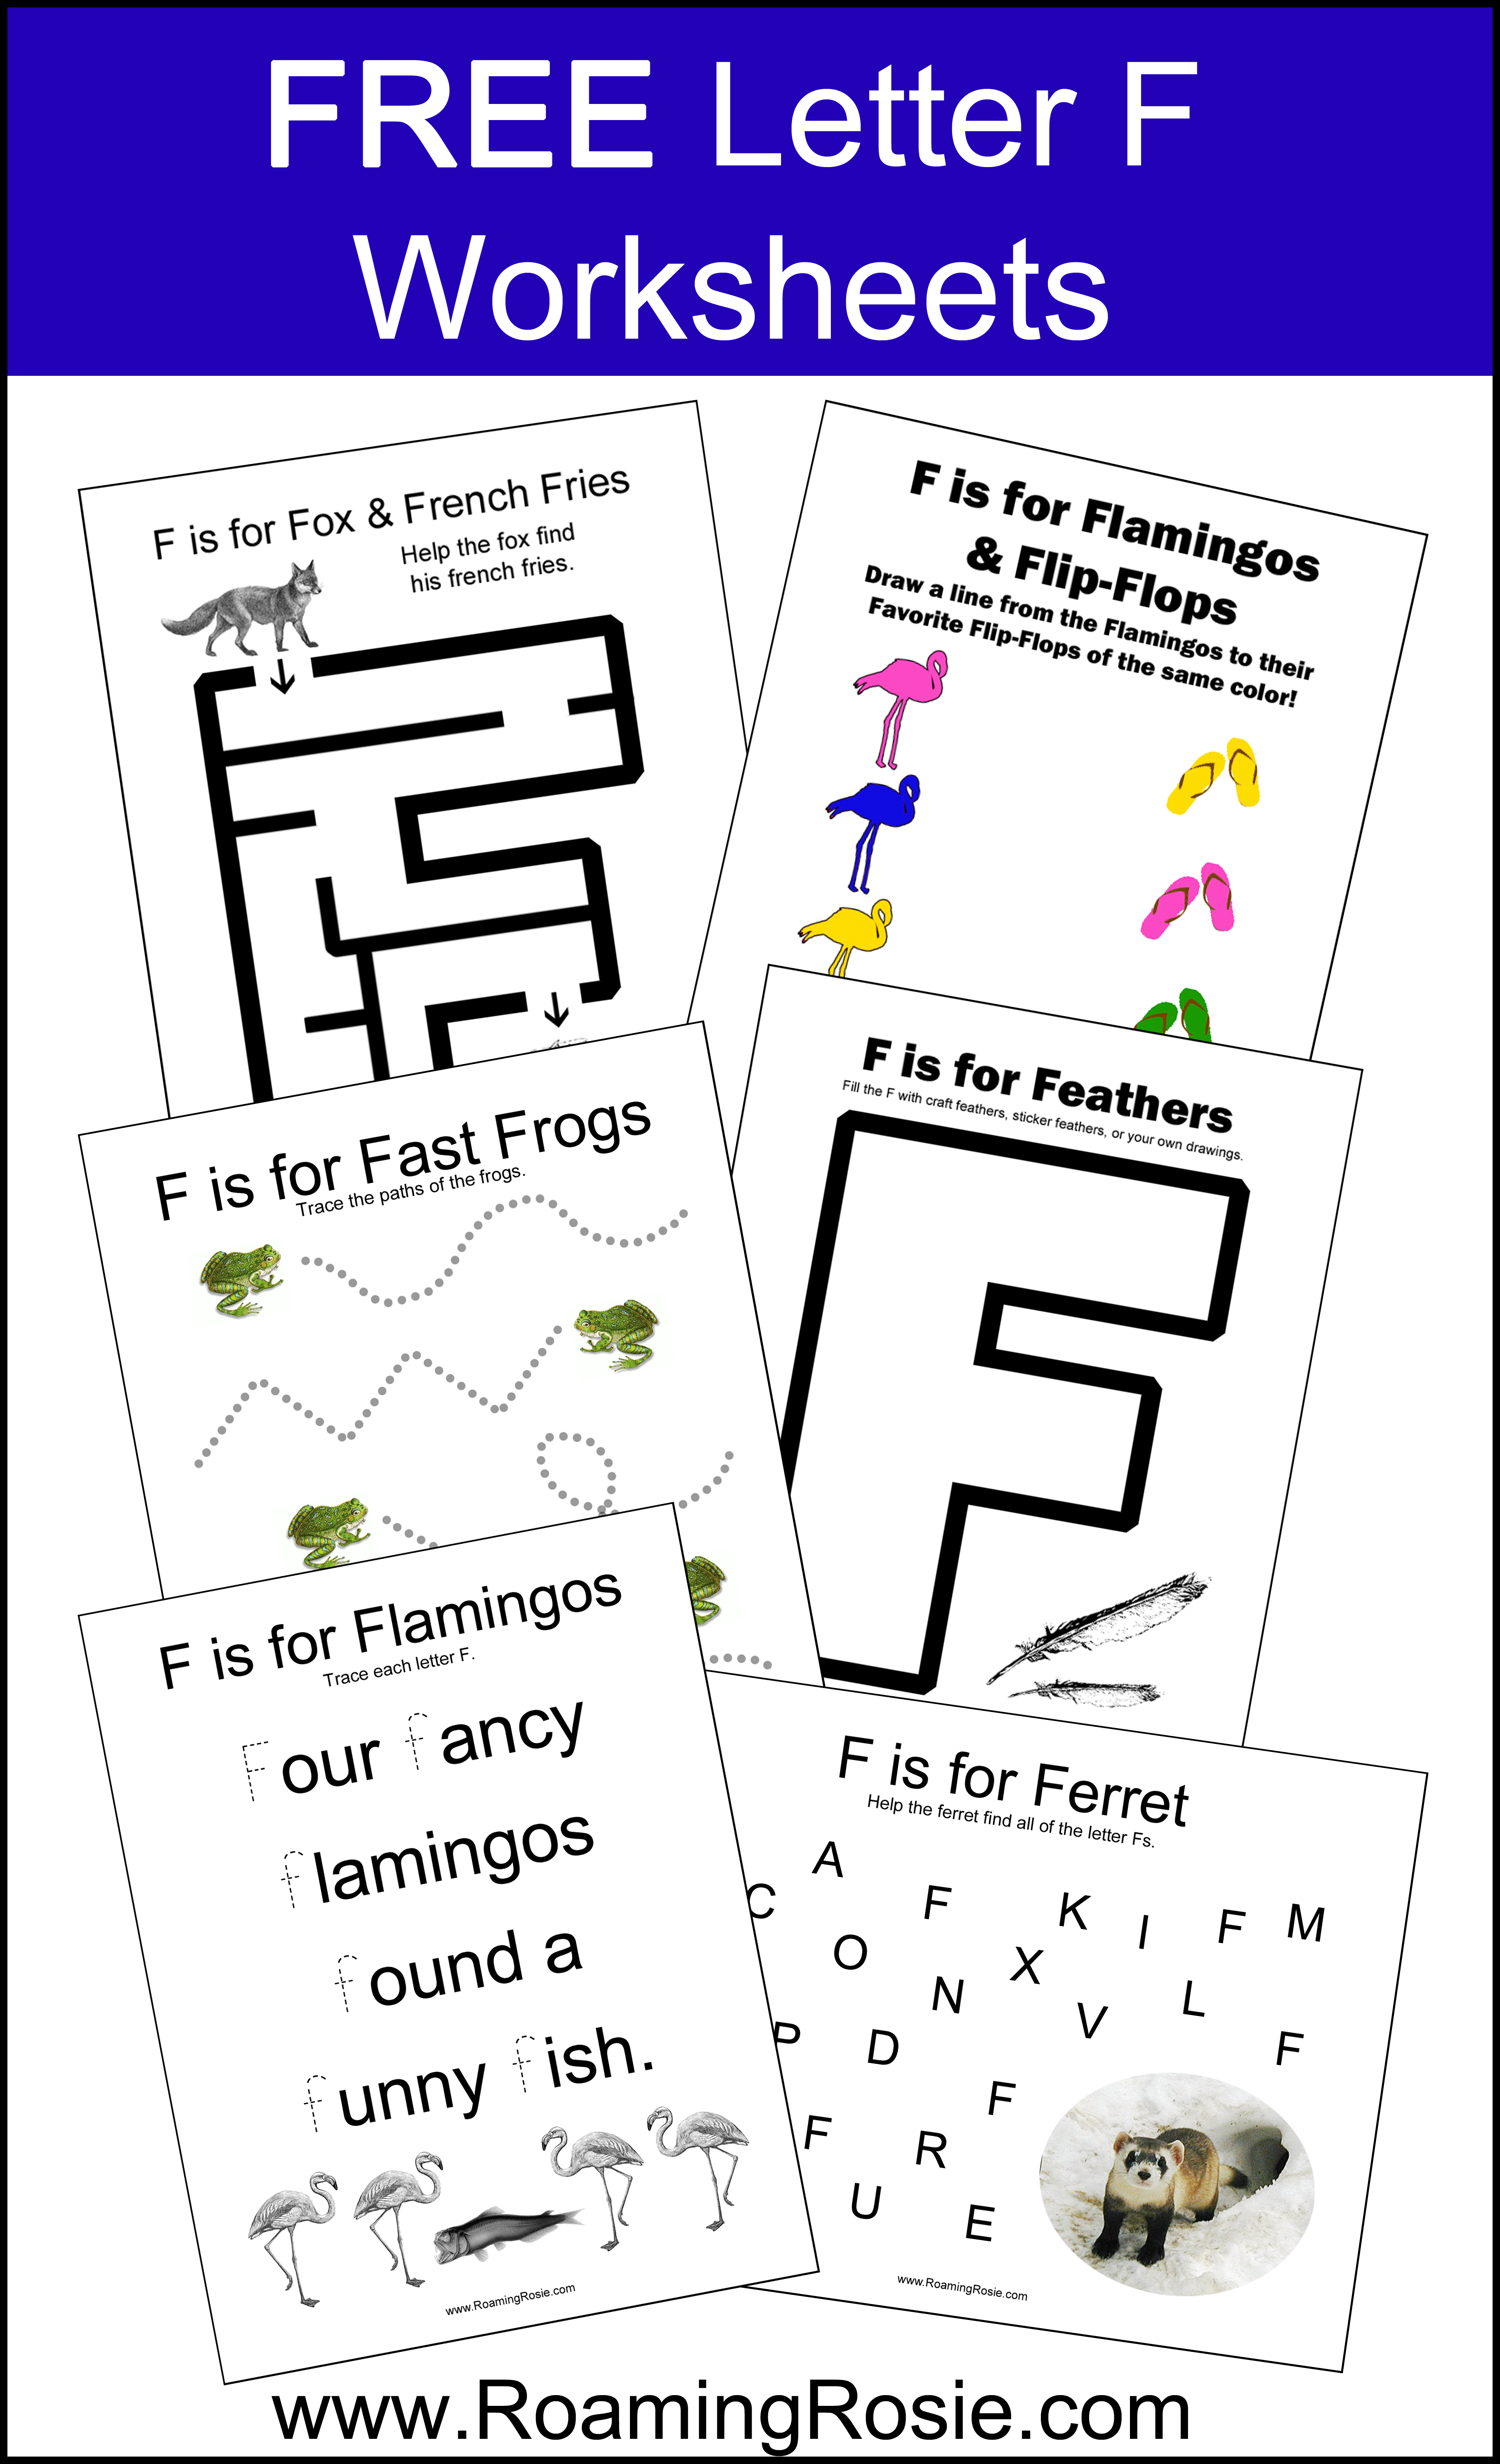 Letter F: Free Alphabet Worksheets for Kids | Roaming Rosie